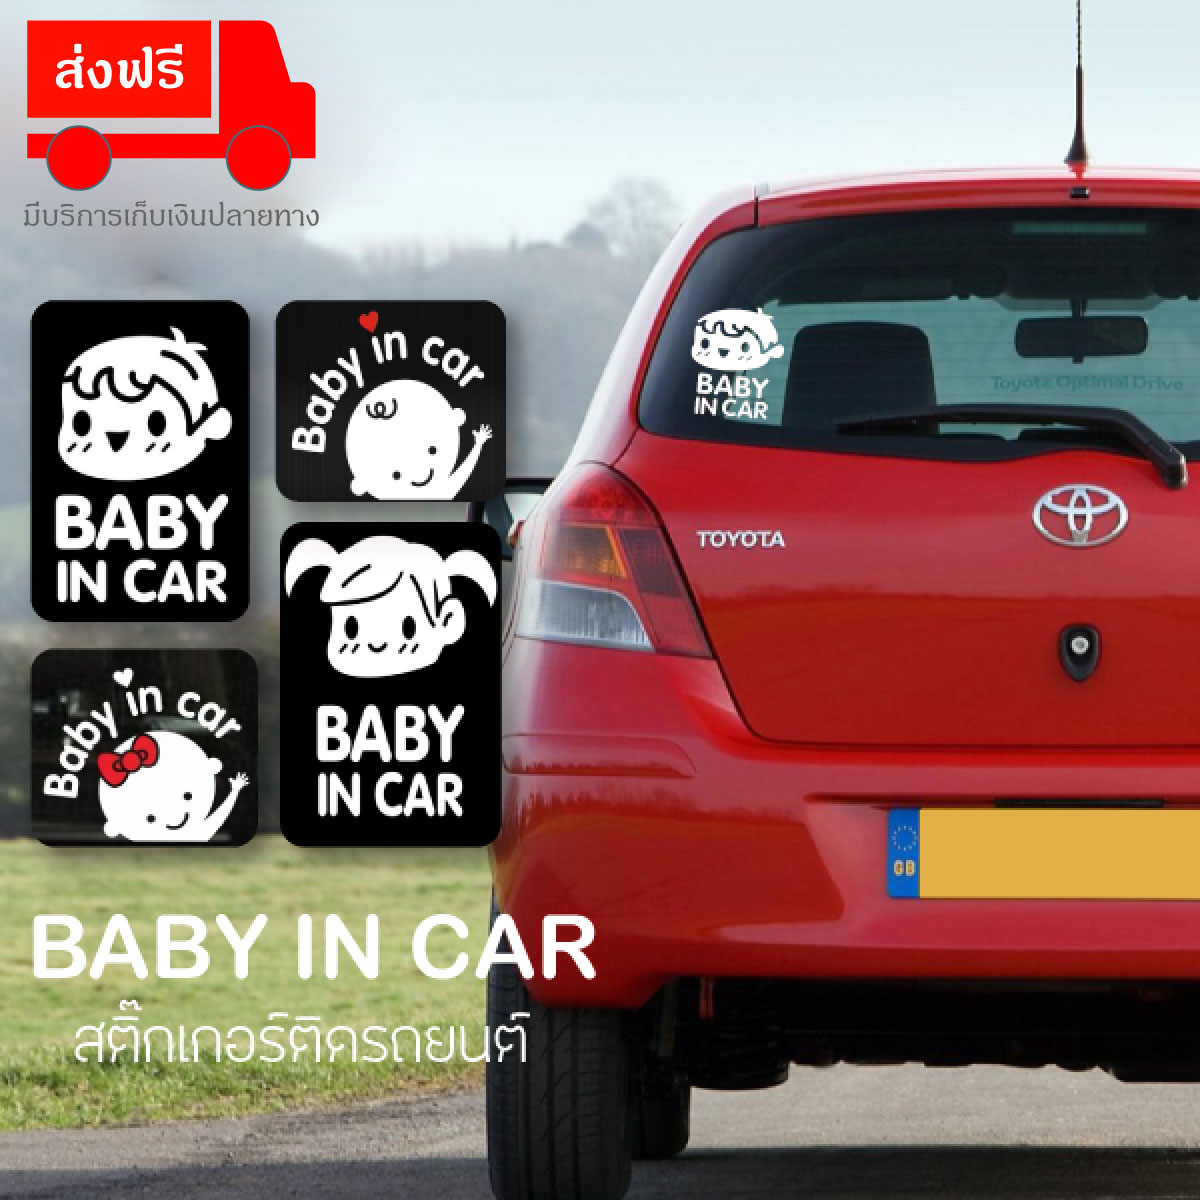 สติ๊กเกอร์ติดรถยนต์ BABY IN CAR สติ๊กเกอร์ติดรถยนต์ ป้ายเตือนในรถมีเด็ก Baby In Car Sticker